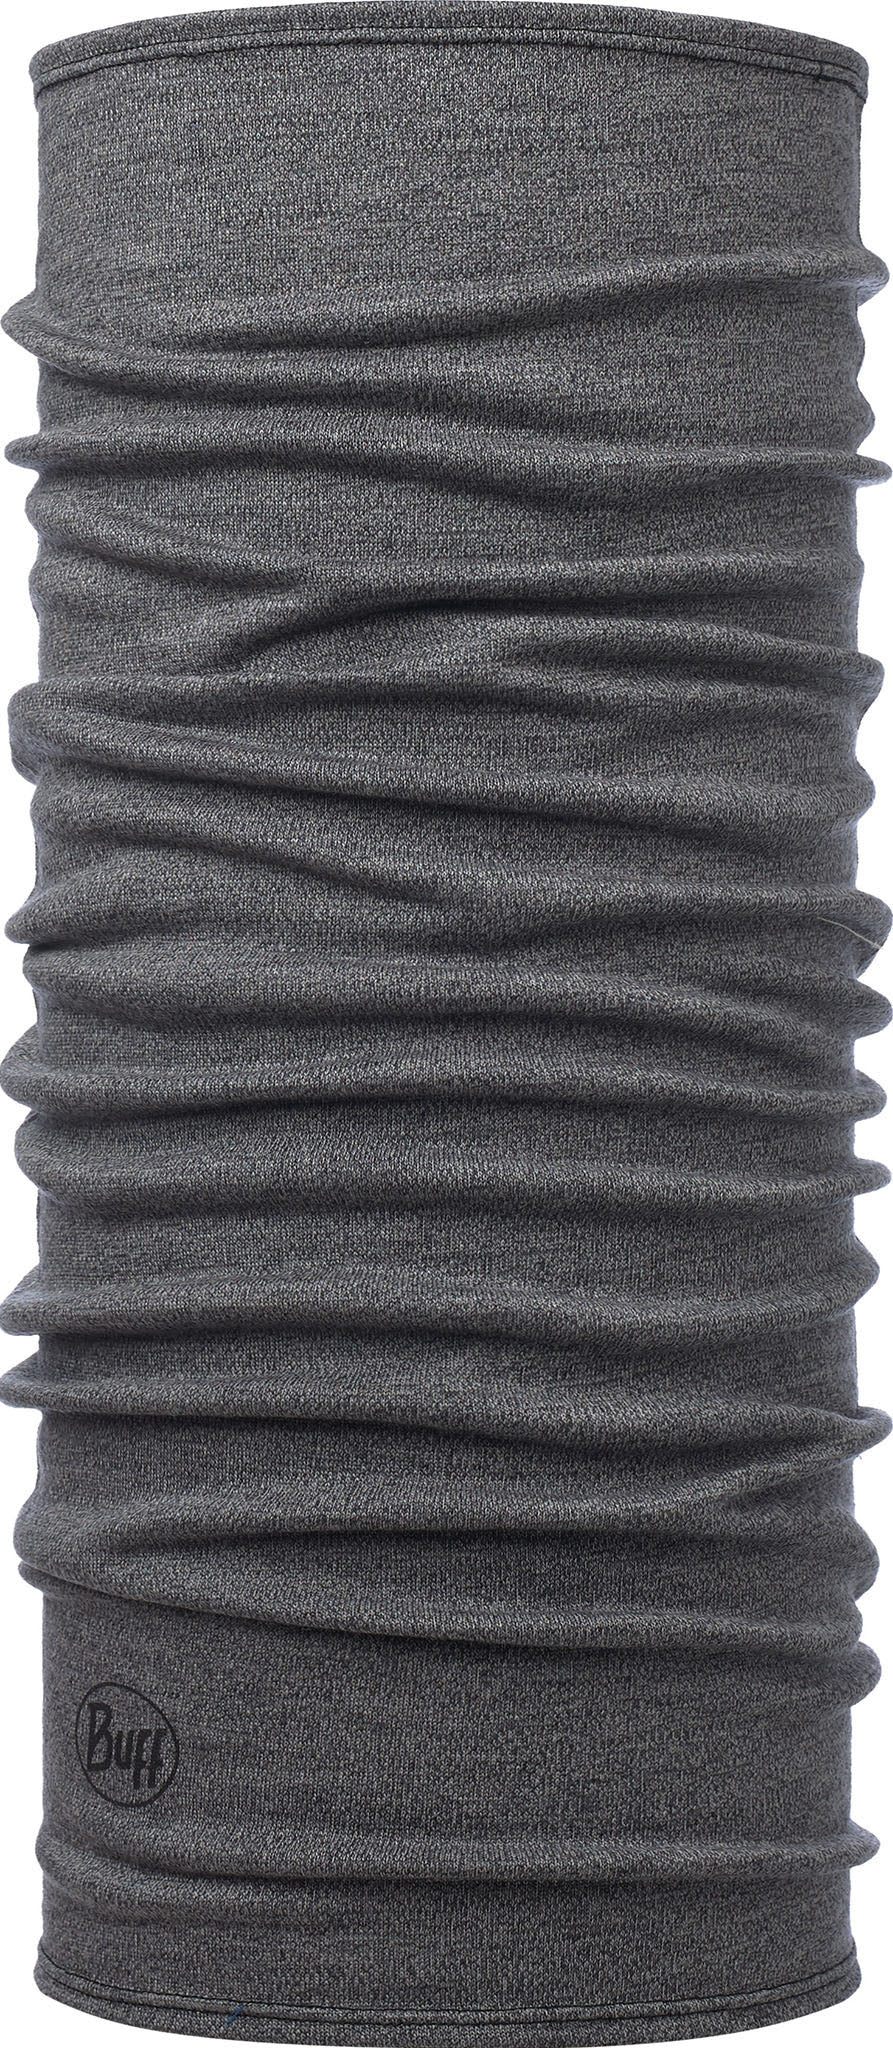 Cache cou épais en laine mérinos Buff Solid - Accessoires Mode - Accessoires